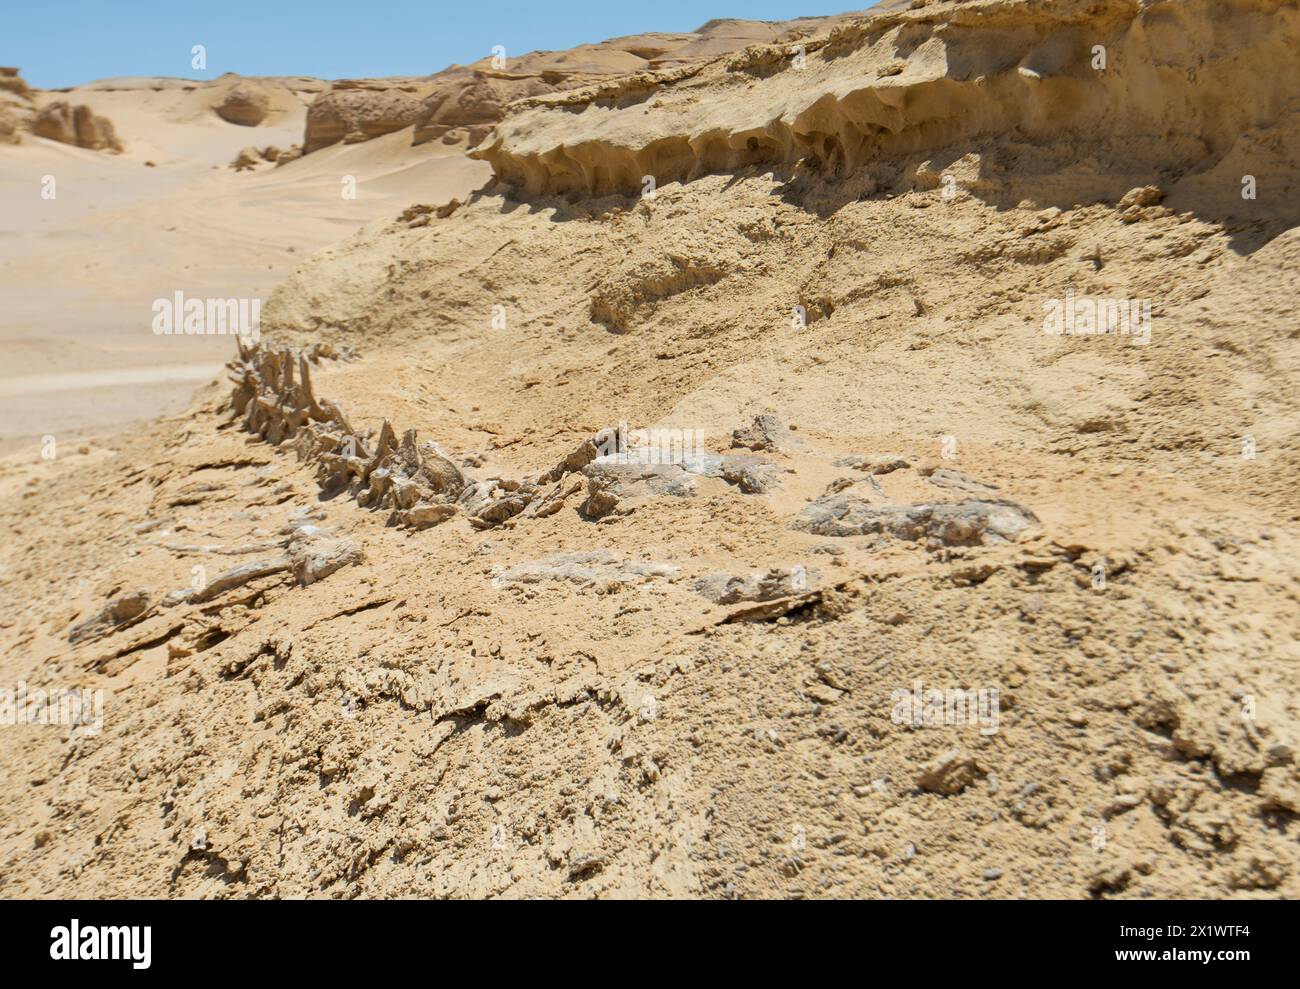 Vue panoramique sur le désert occidental désertique désertique et stérile en Égypte avec des formations rocheuses géologiques de grès de montagne et squelette de baleine fossilisé Banque D'Images